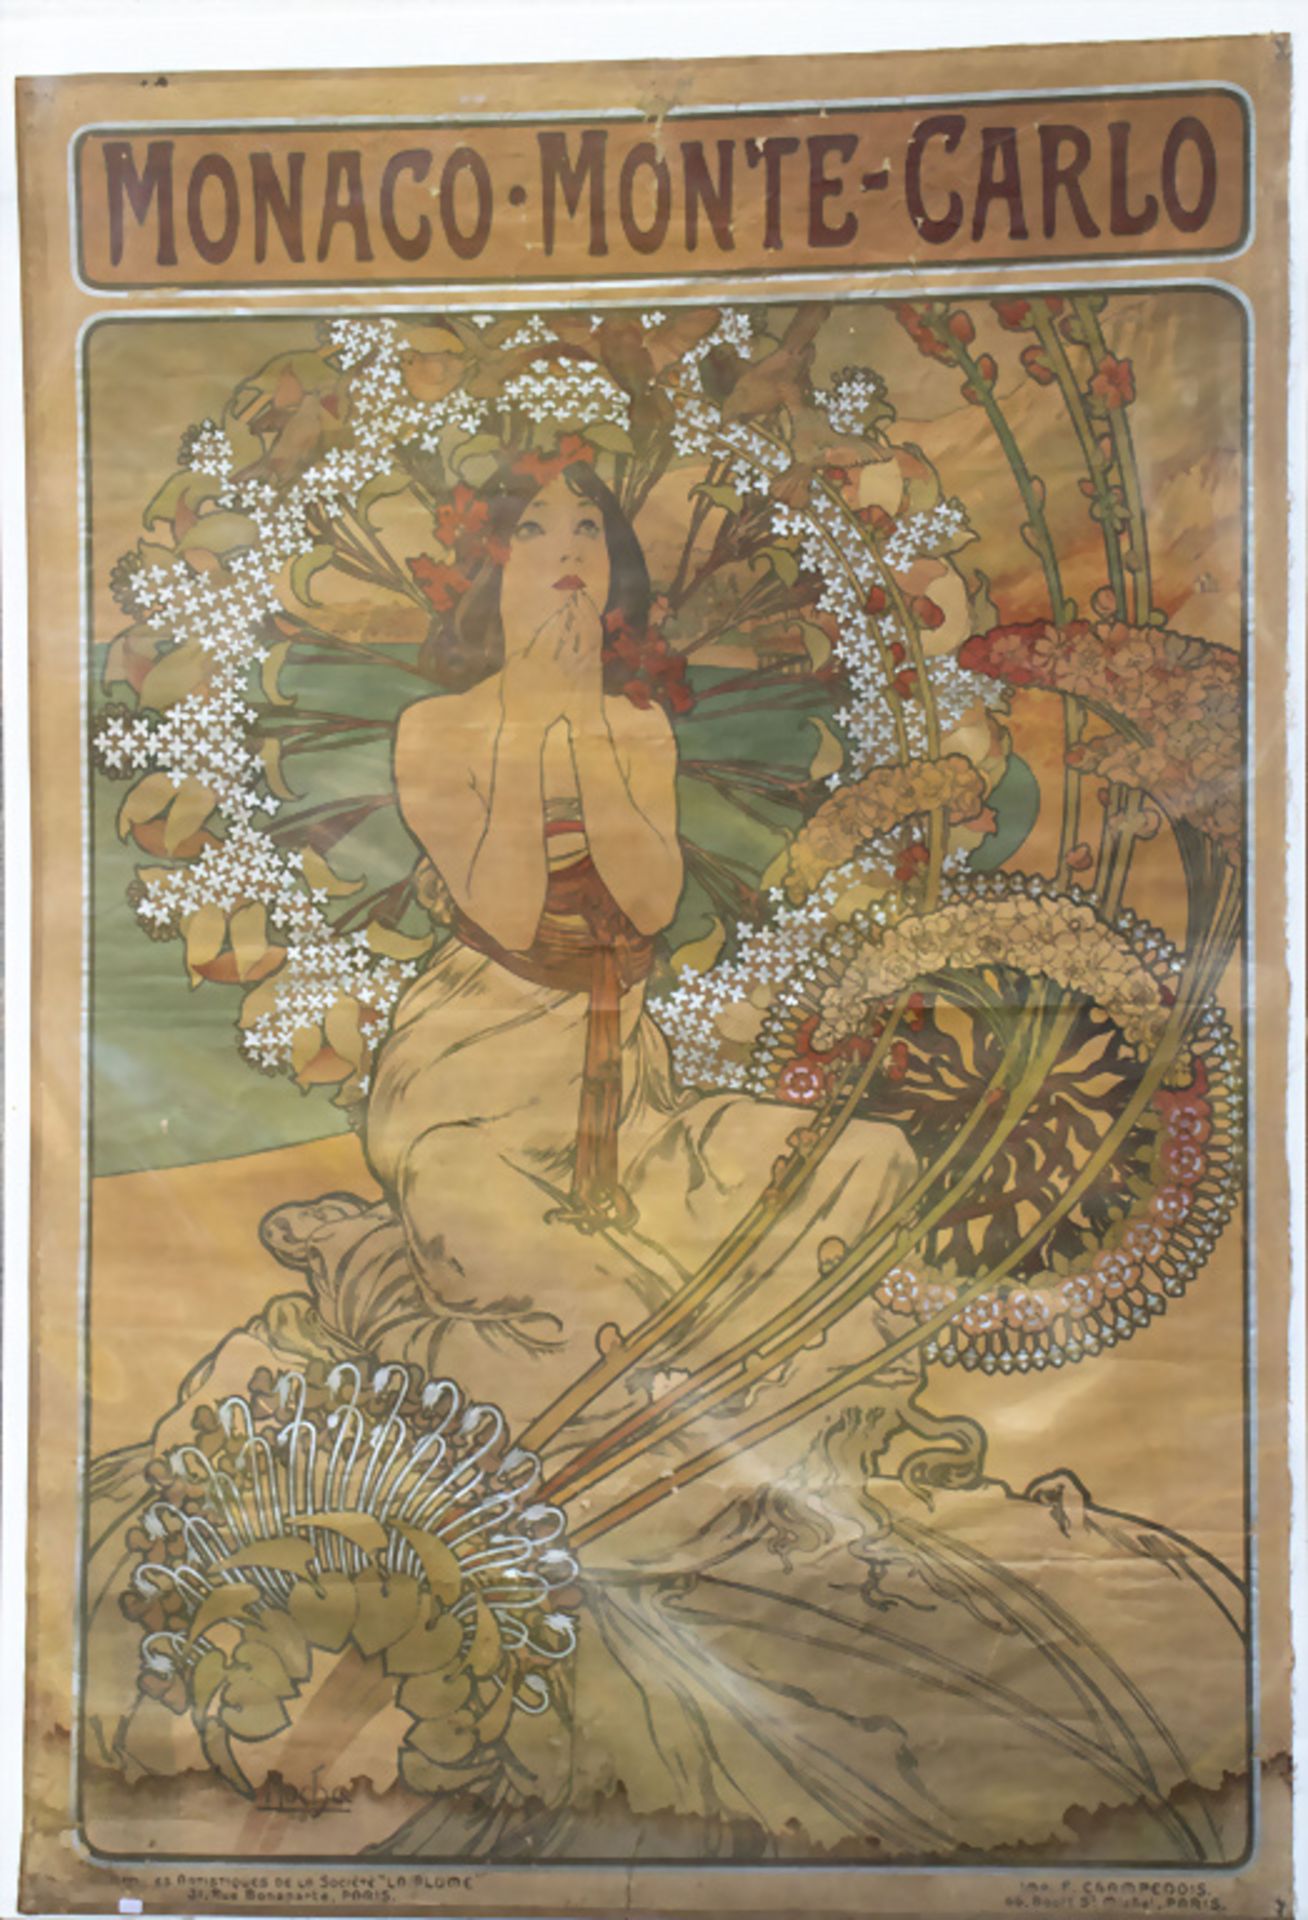 Plakat 'MONACO-MONTE-CARLO', Alfons Maria Mucha (1860-1939), um 1900 - Bild 2 aus 8